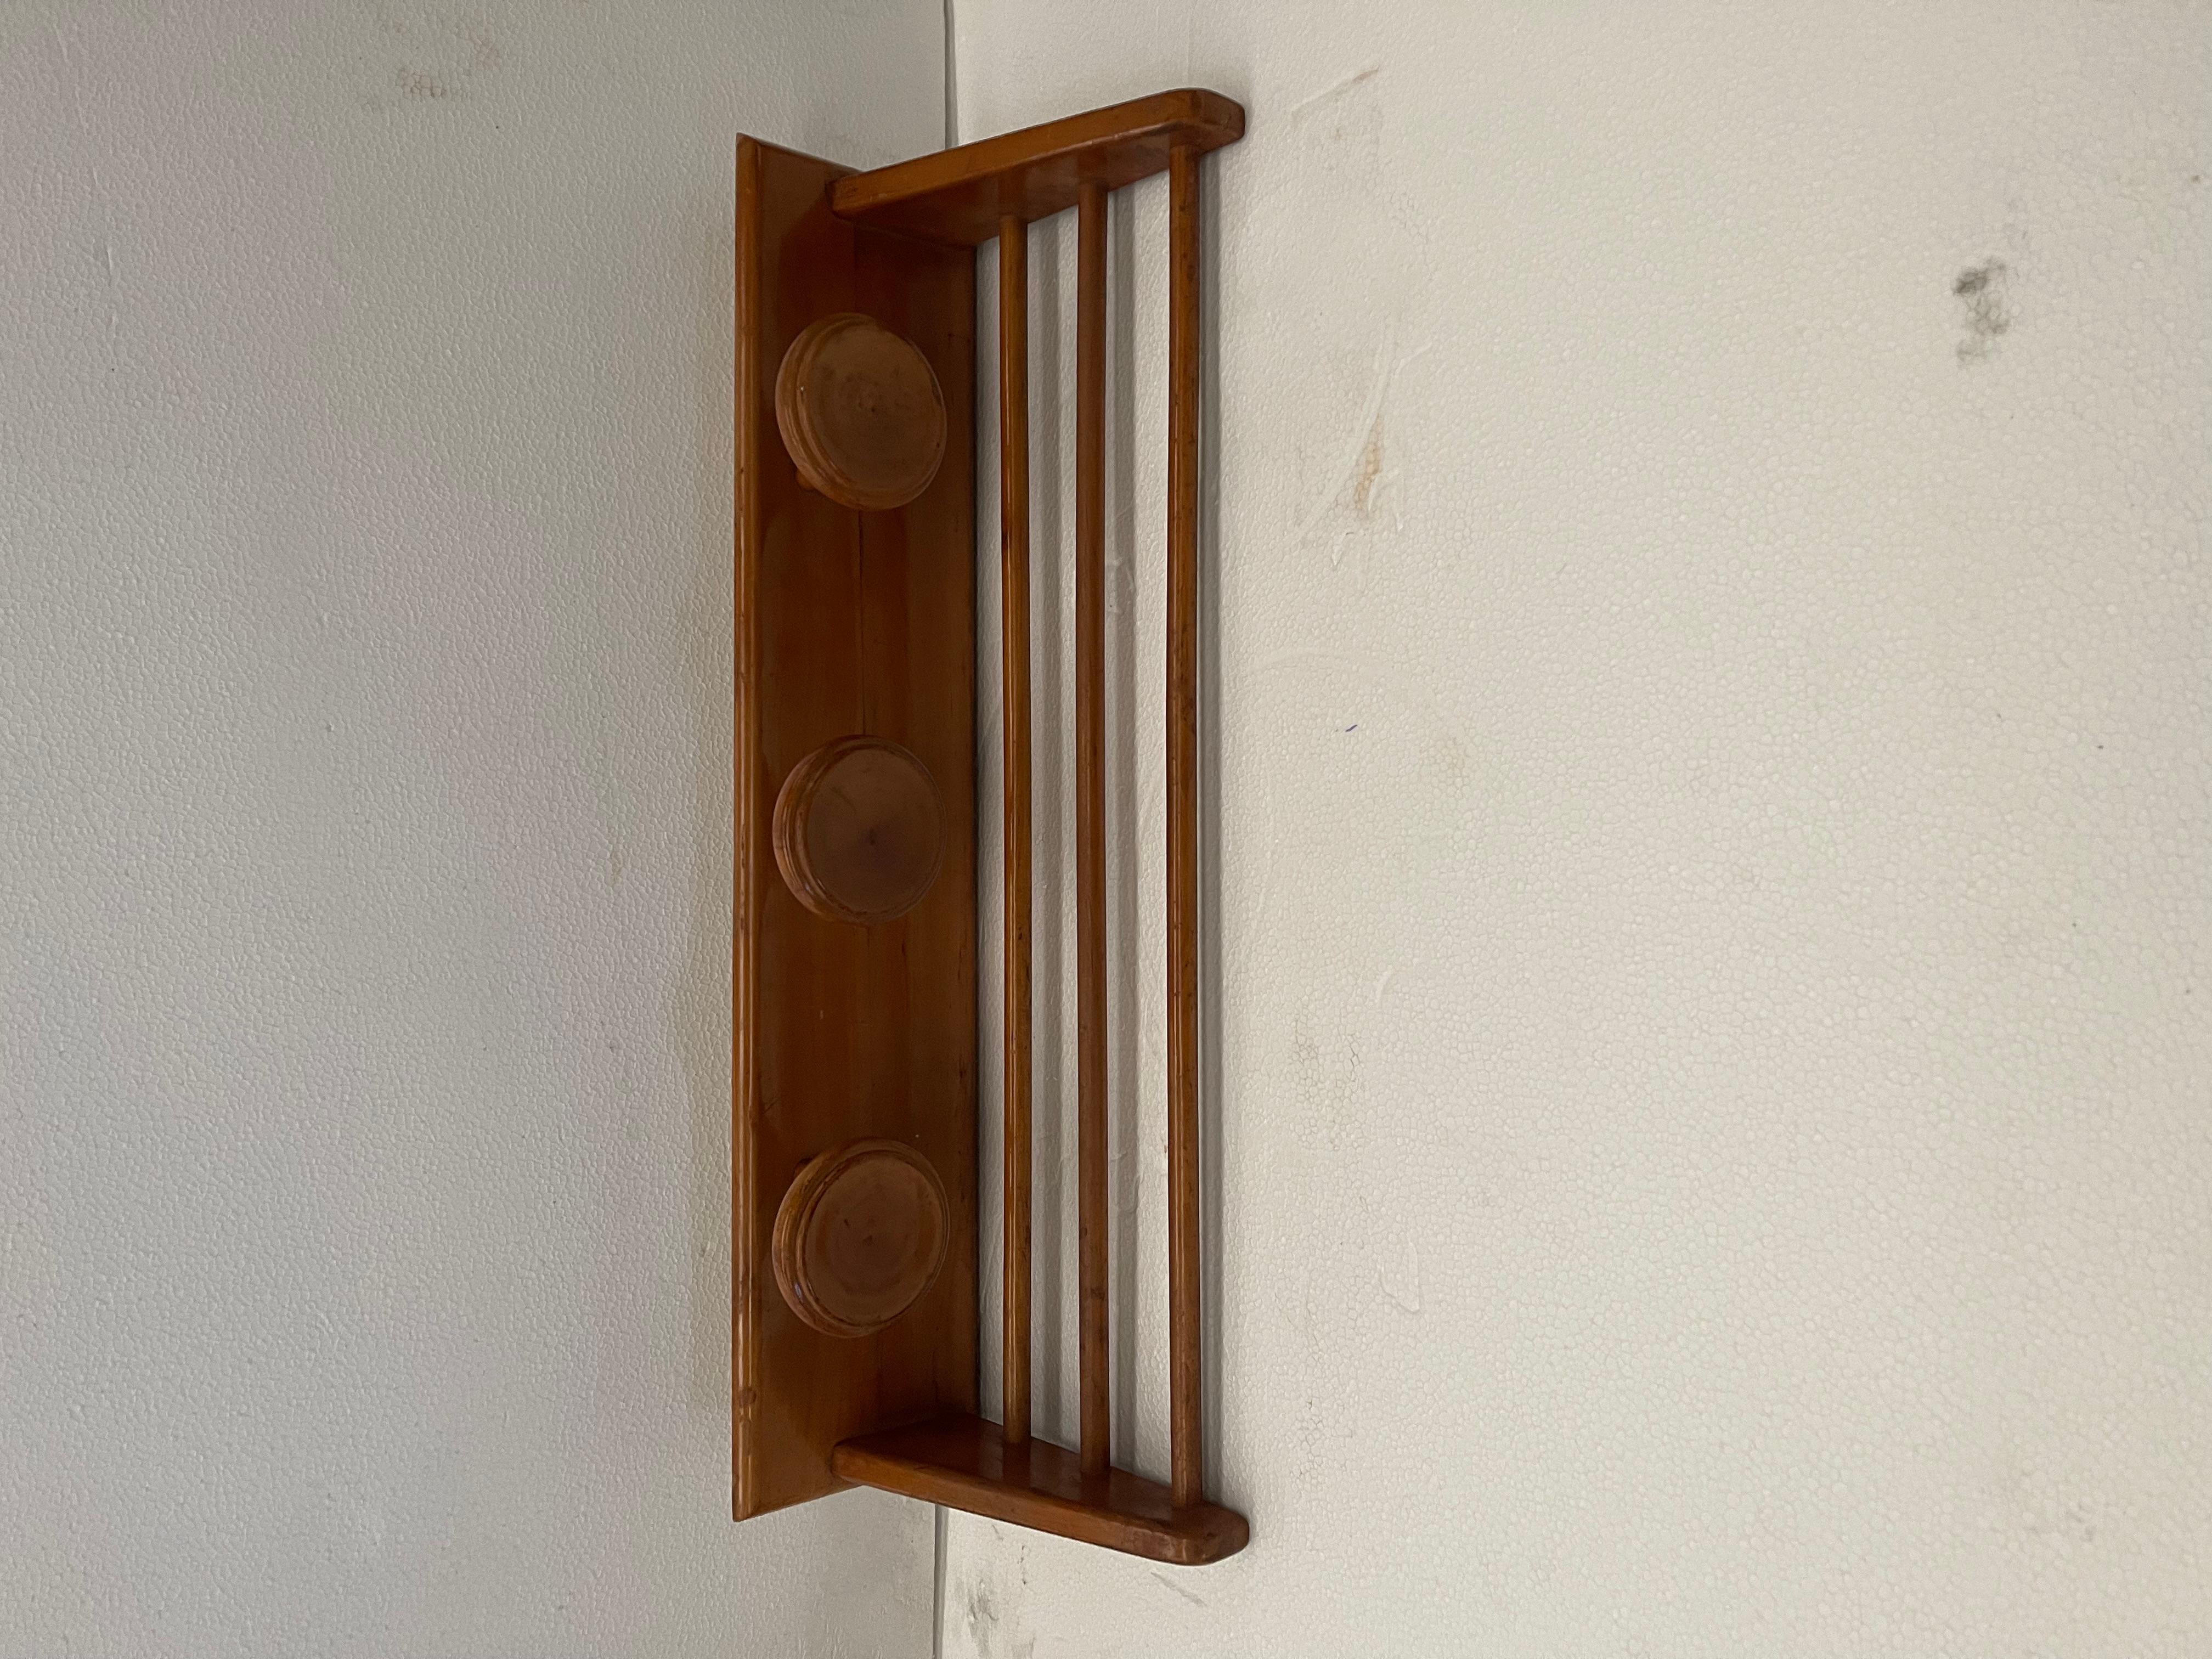 Appendiabiti vintage style anni 60 da parete in legno. Private Collection Domenico Rugiano 